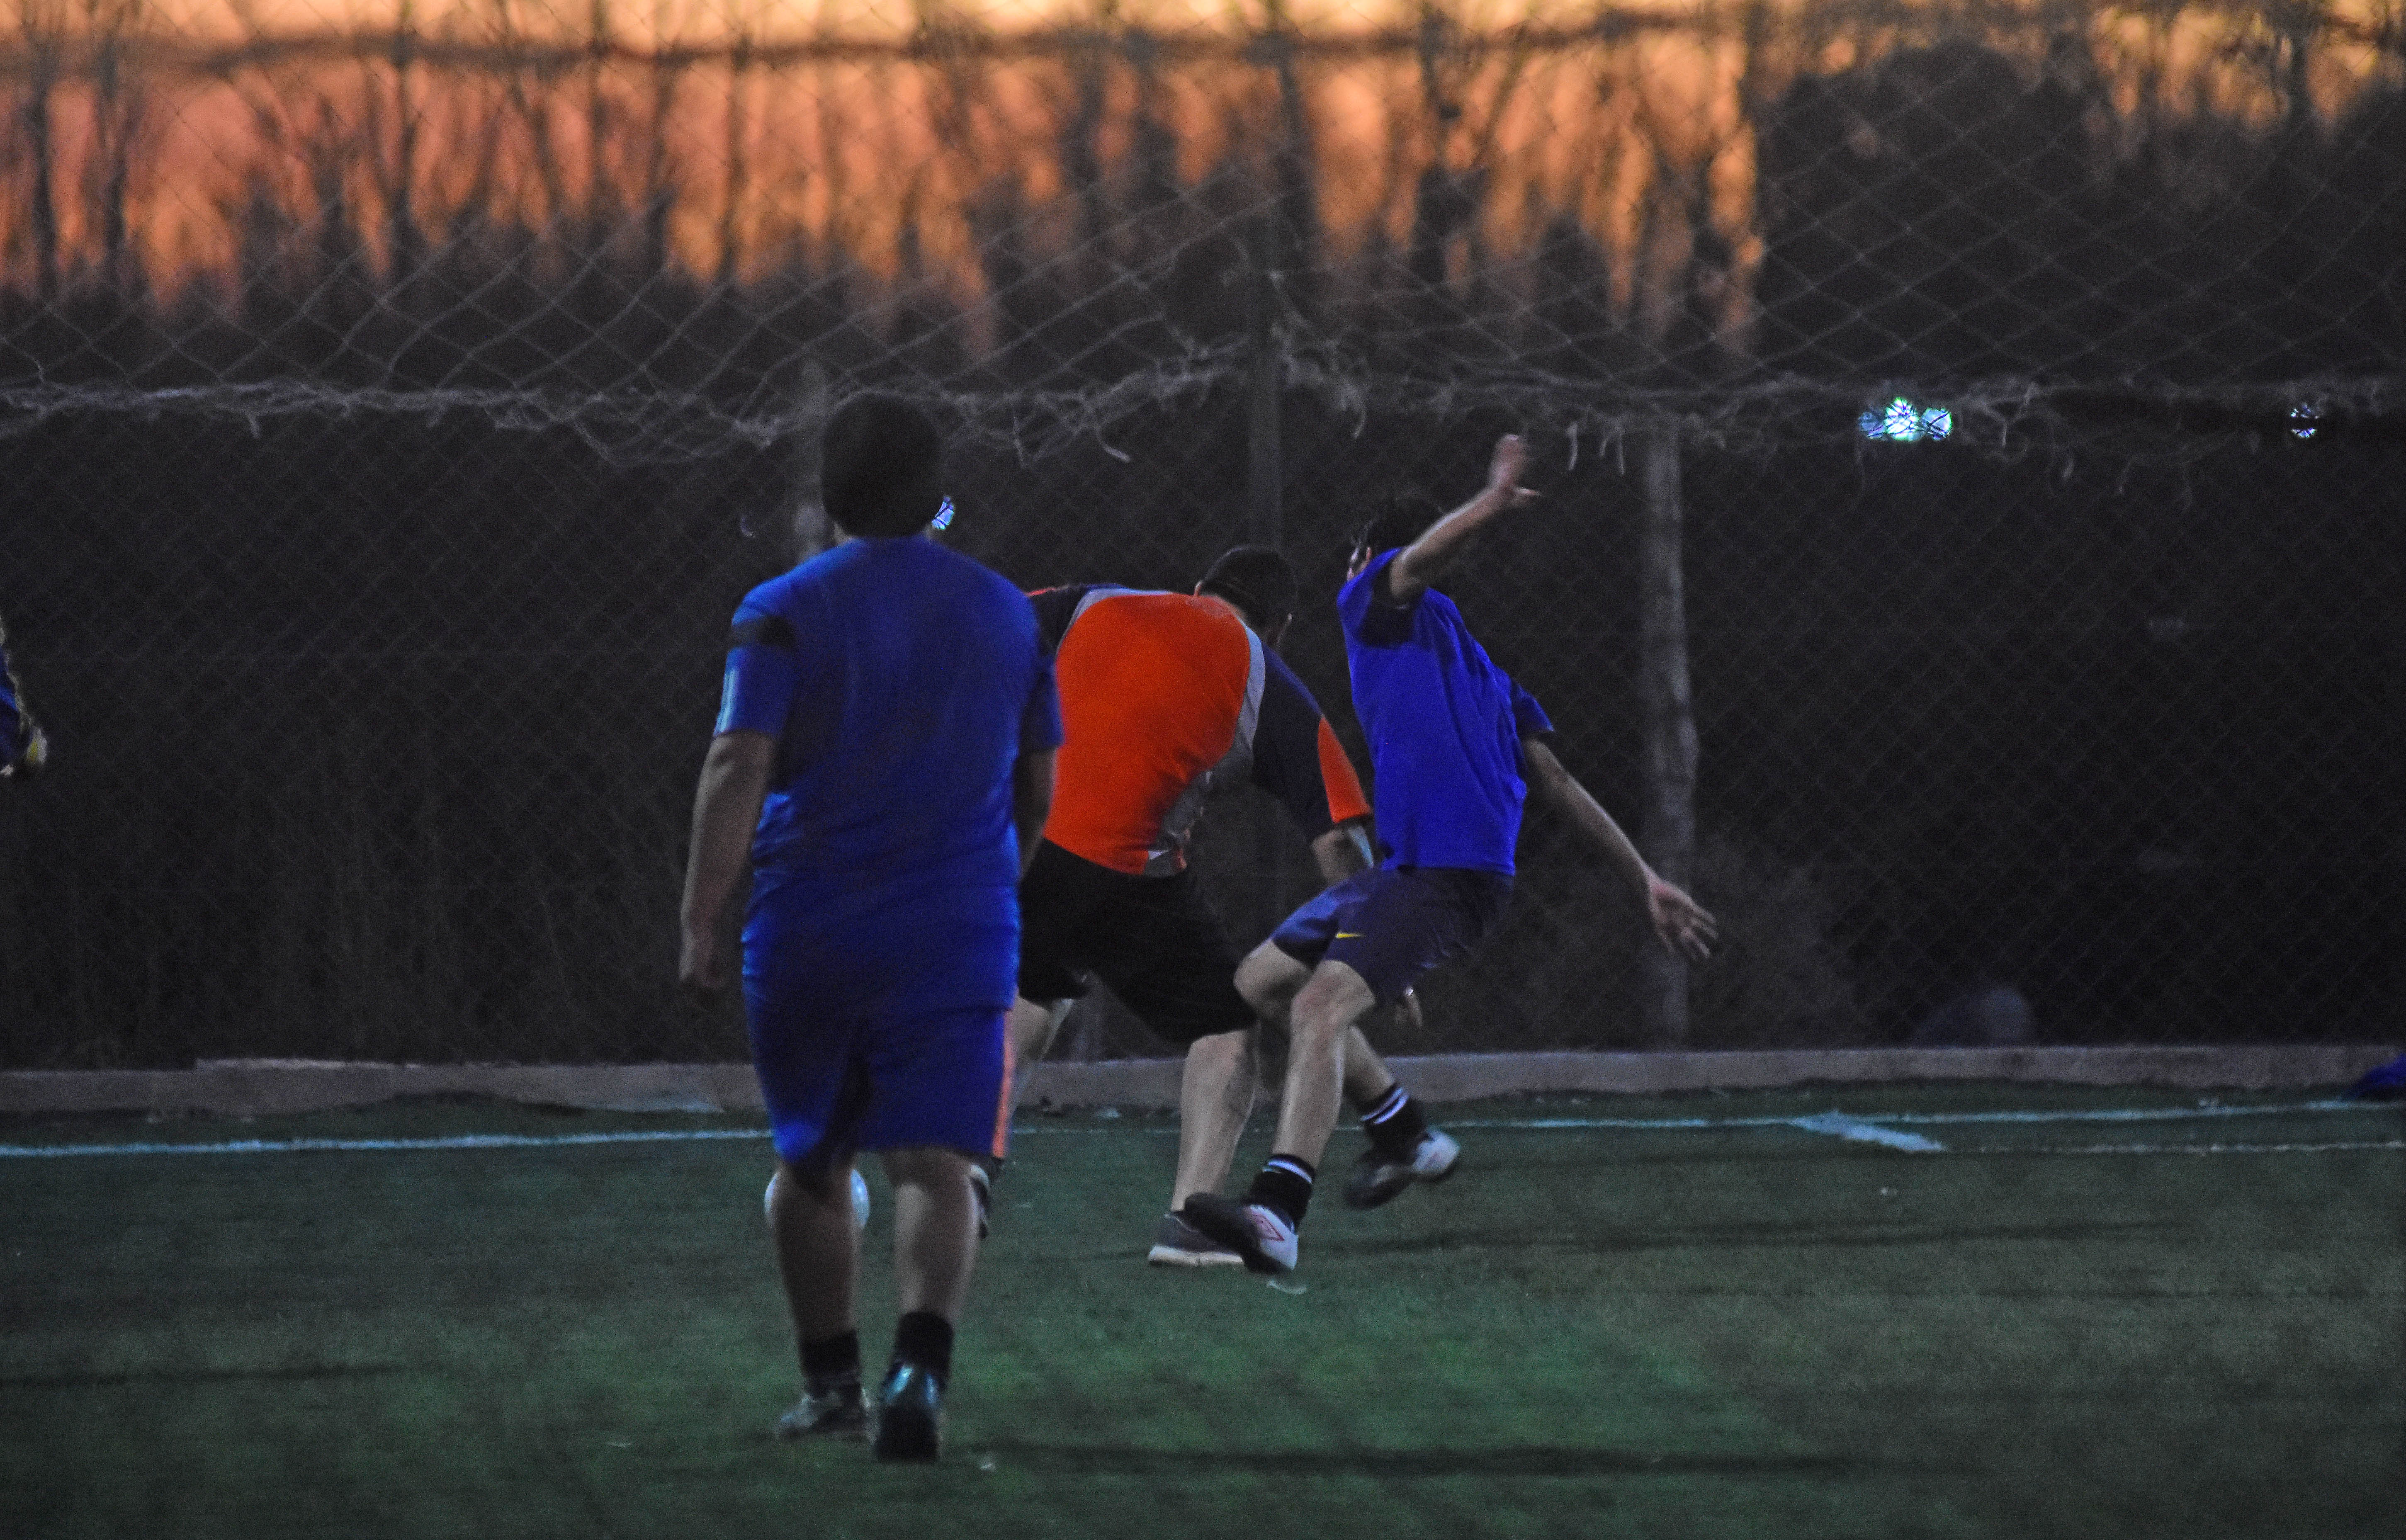 El fútbol despierta interés en el deportista amateur o recreativo. Es necesario realizar controles de manera regular. (Foto: Andrés Maripe)